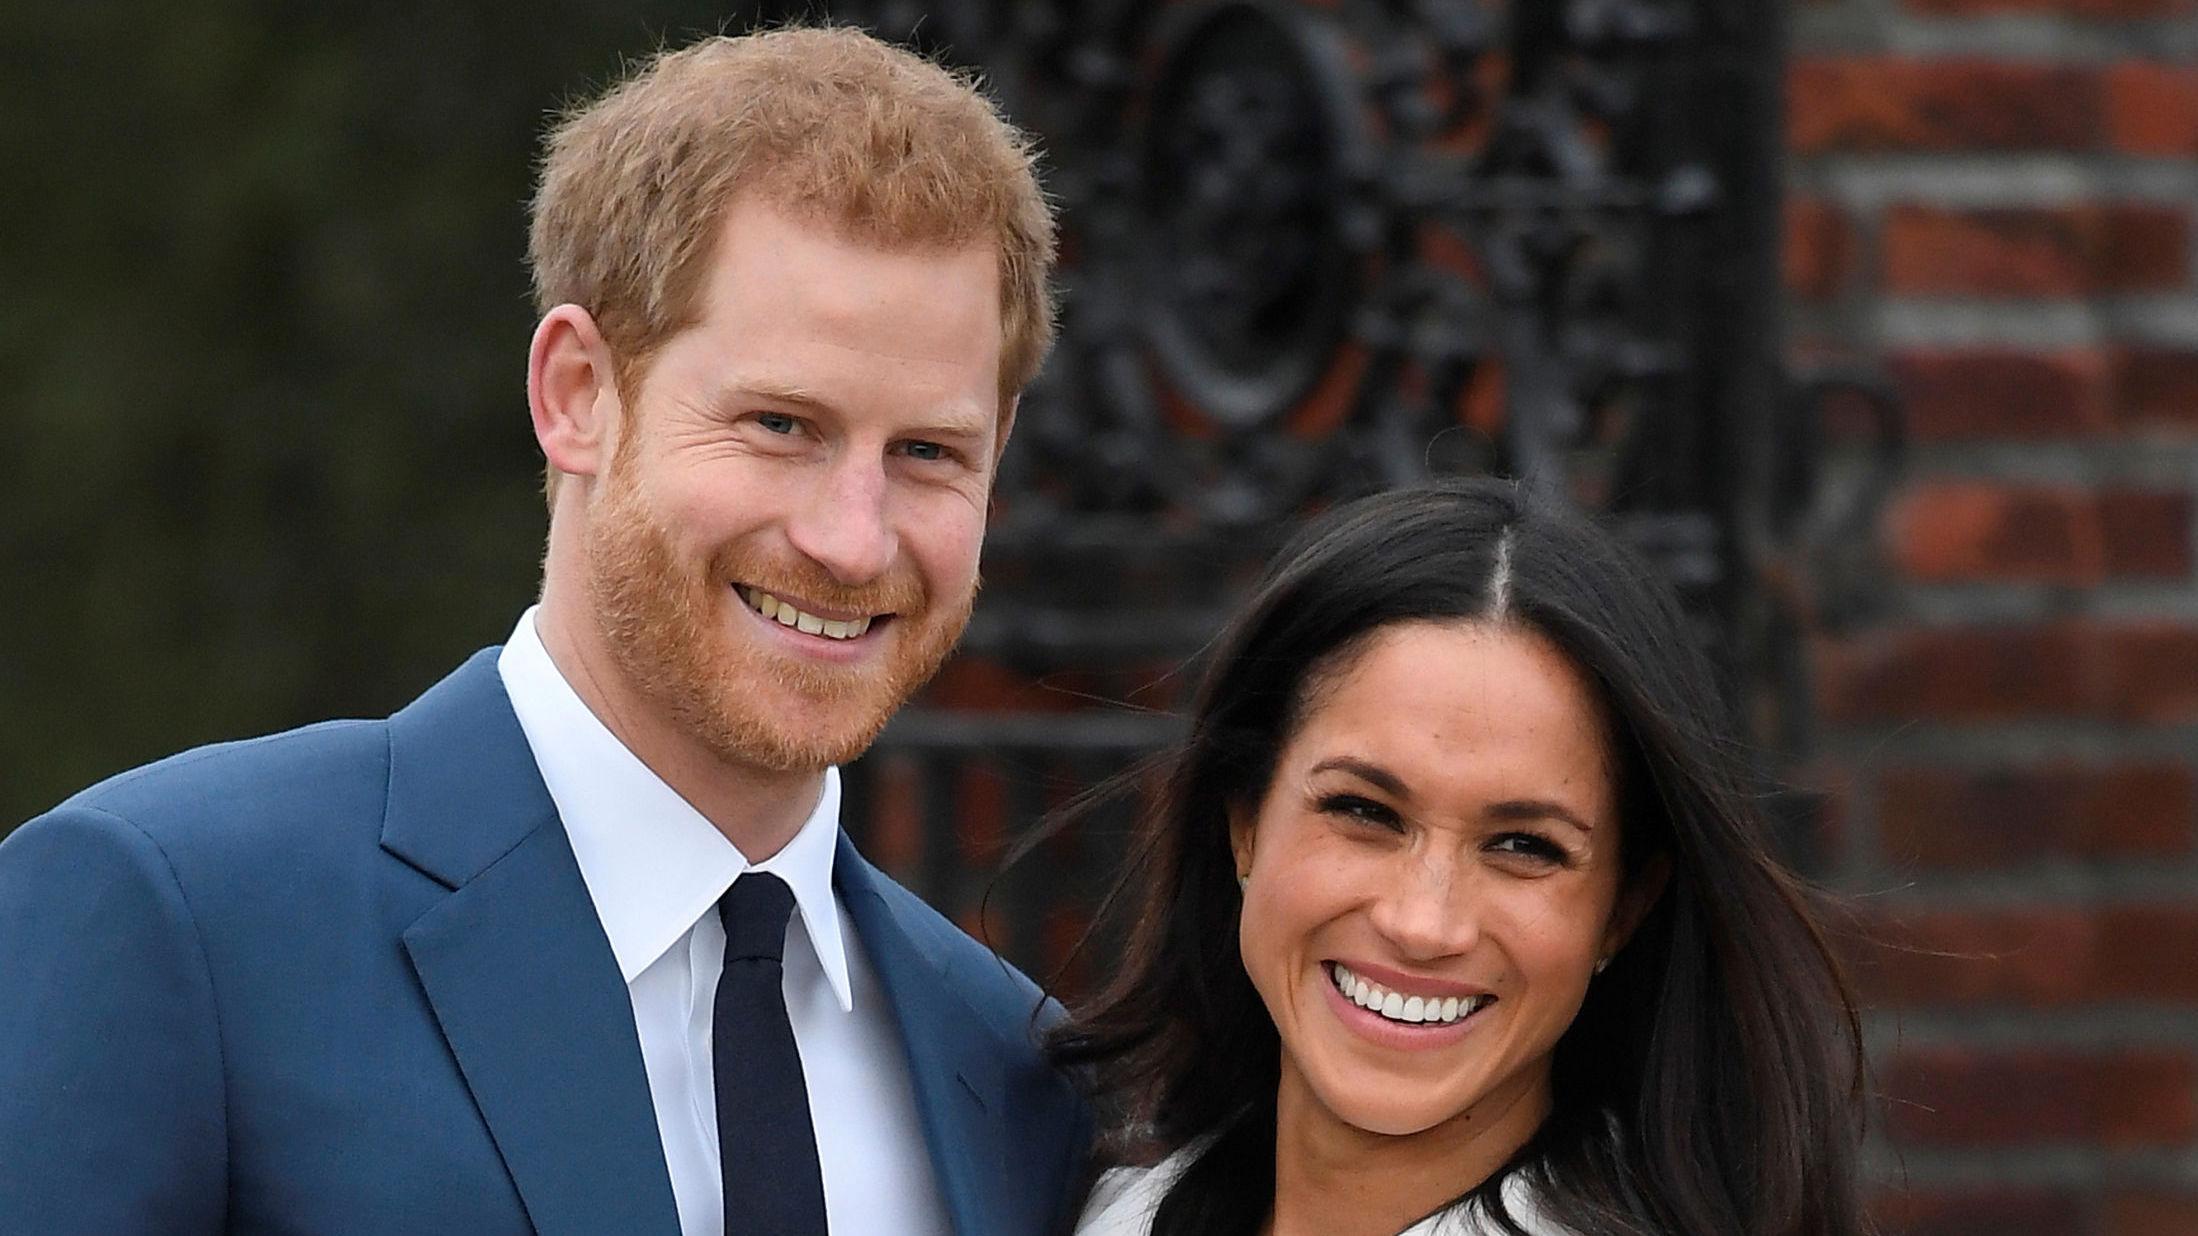 KONGELIG BRYLLUP: Prins Harry og Meghan Markle poserte for pressen etter offentliggjørelsen av forlovelsen i fjor. Foto: Toby Melville/Reuters